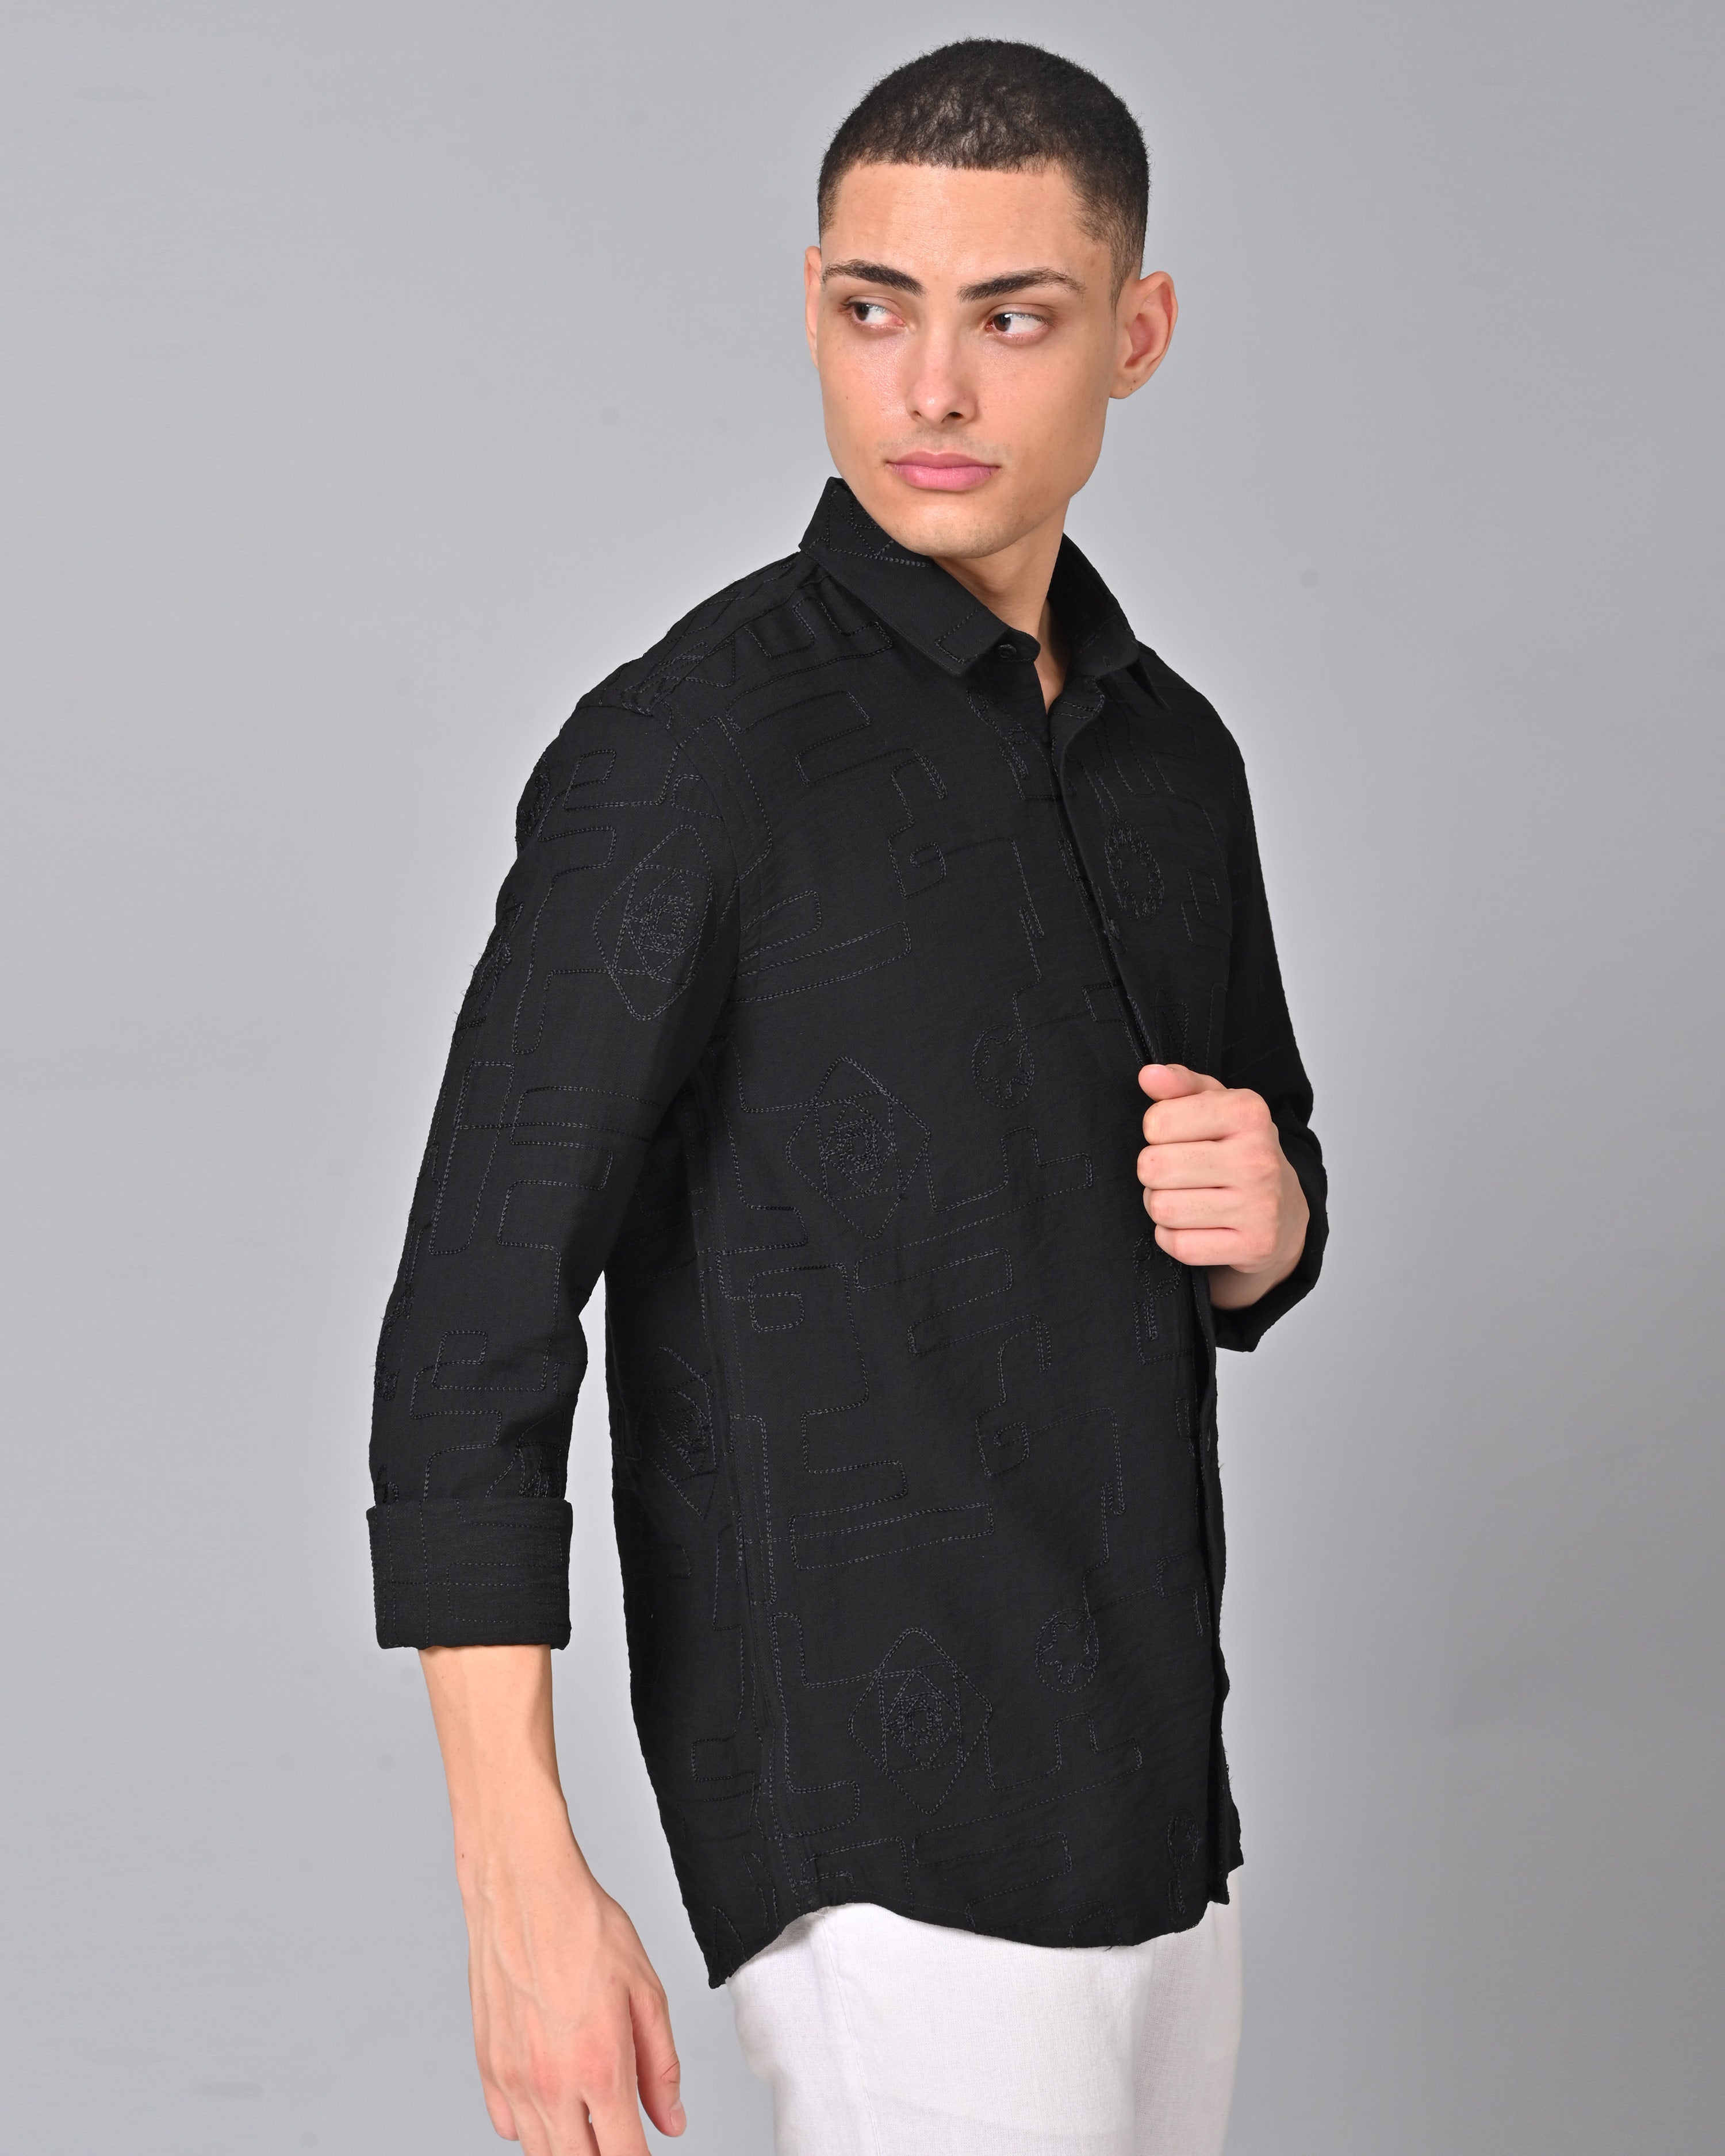 Buy Men's Embroidered Black Full Sleeve Shirt